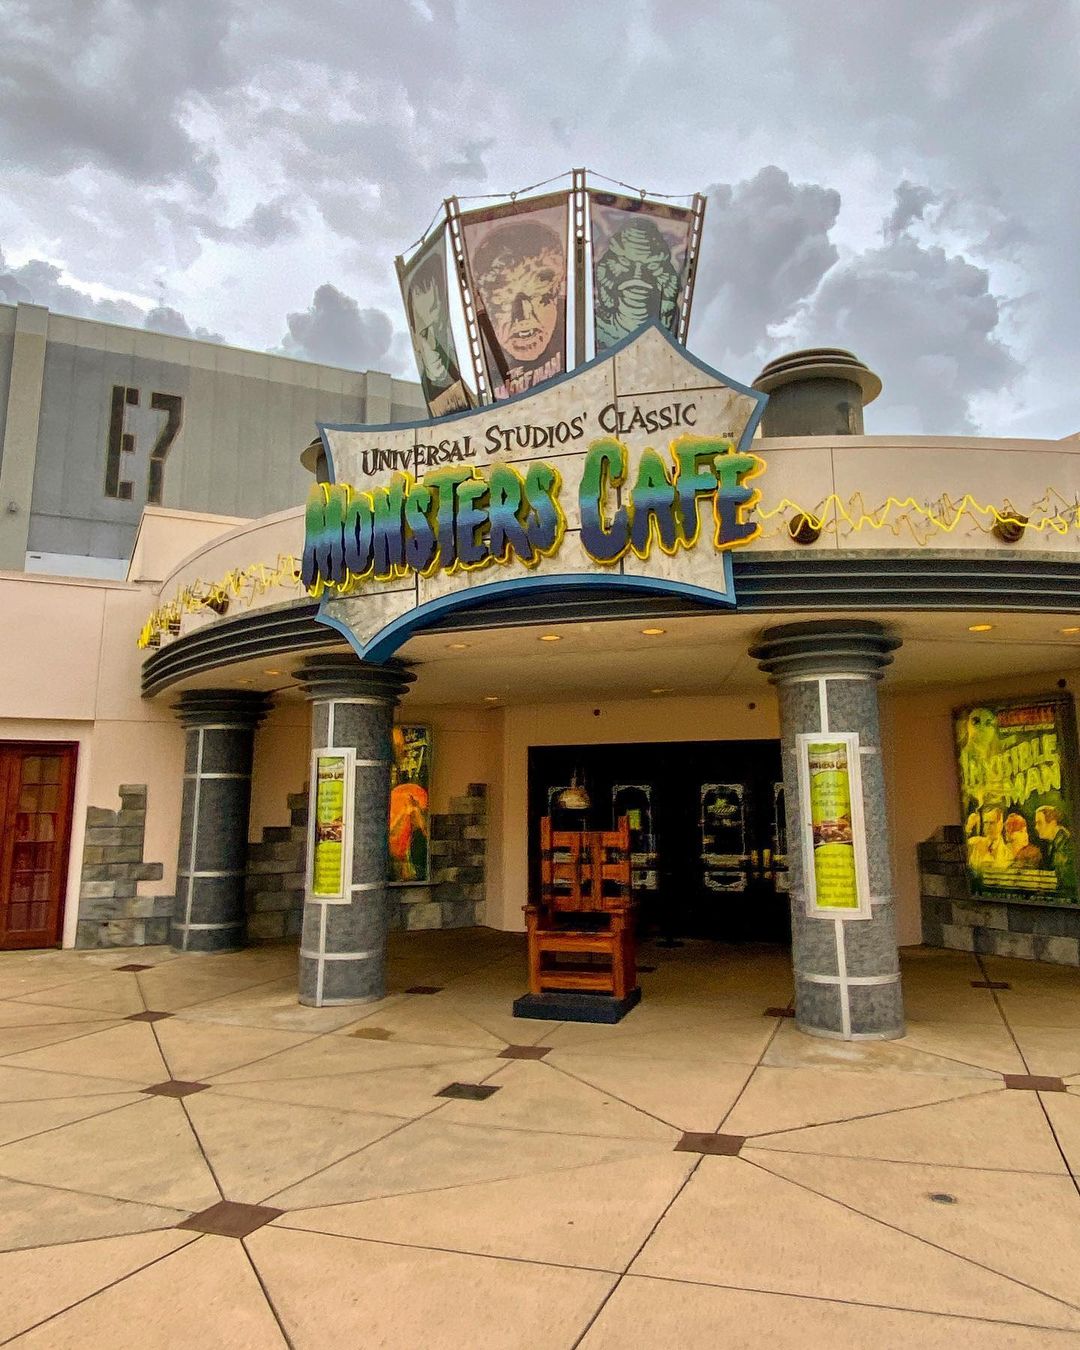 Classic Monsters Cafe - Restaurante da Universal Studios